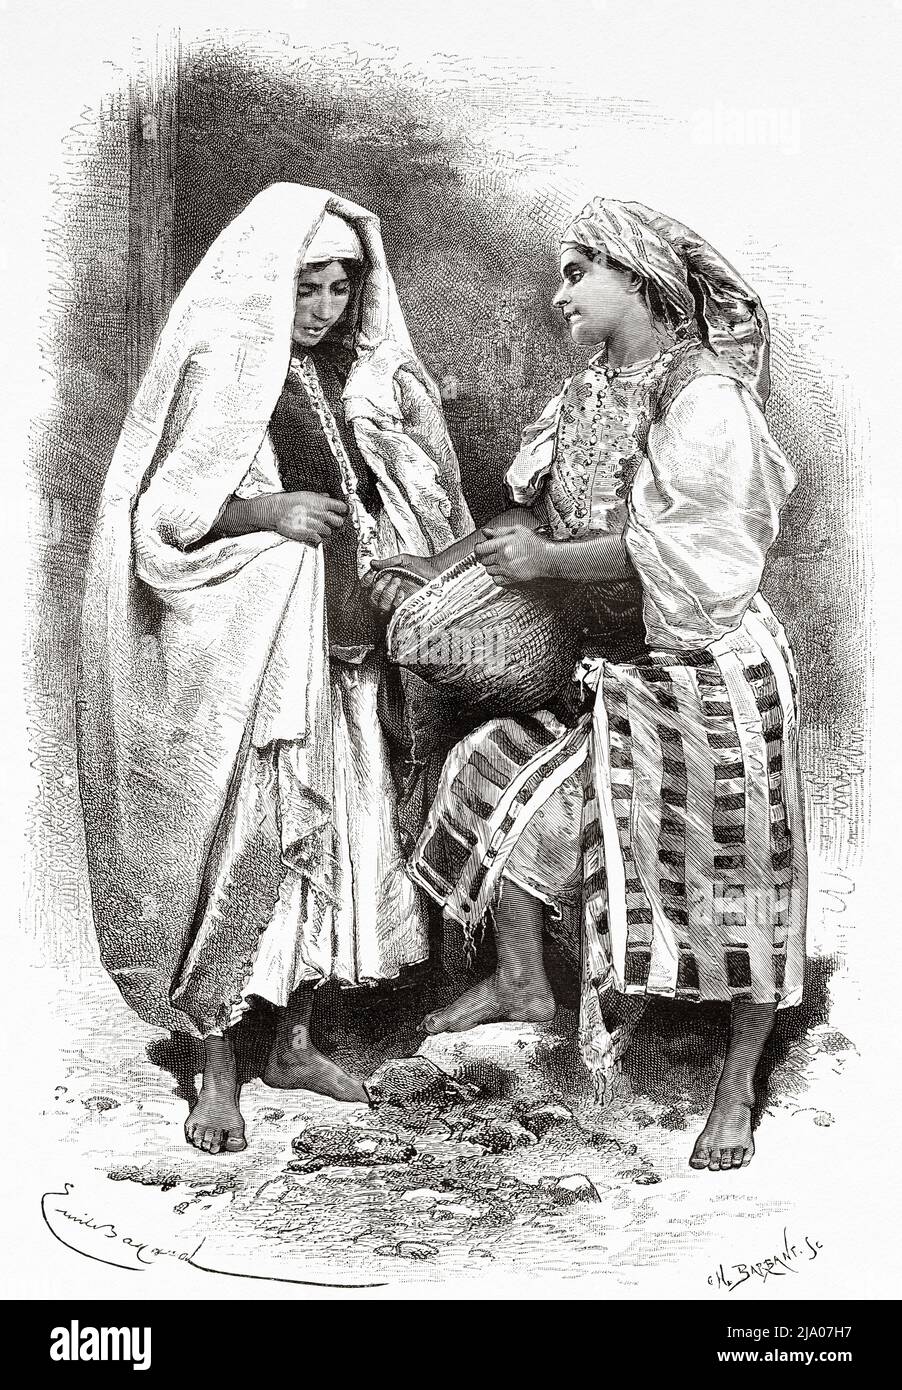 Femmes rurales arabes vêtues de vêtements traditionnels marocains, Maroc. Nord de l'Afrique. Maroc par Edmondo de Amicis 1875. Le Tour du monde 1879 Banque D'Images